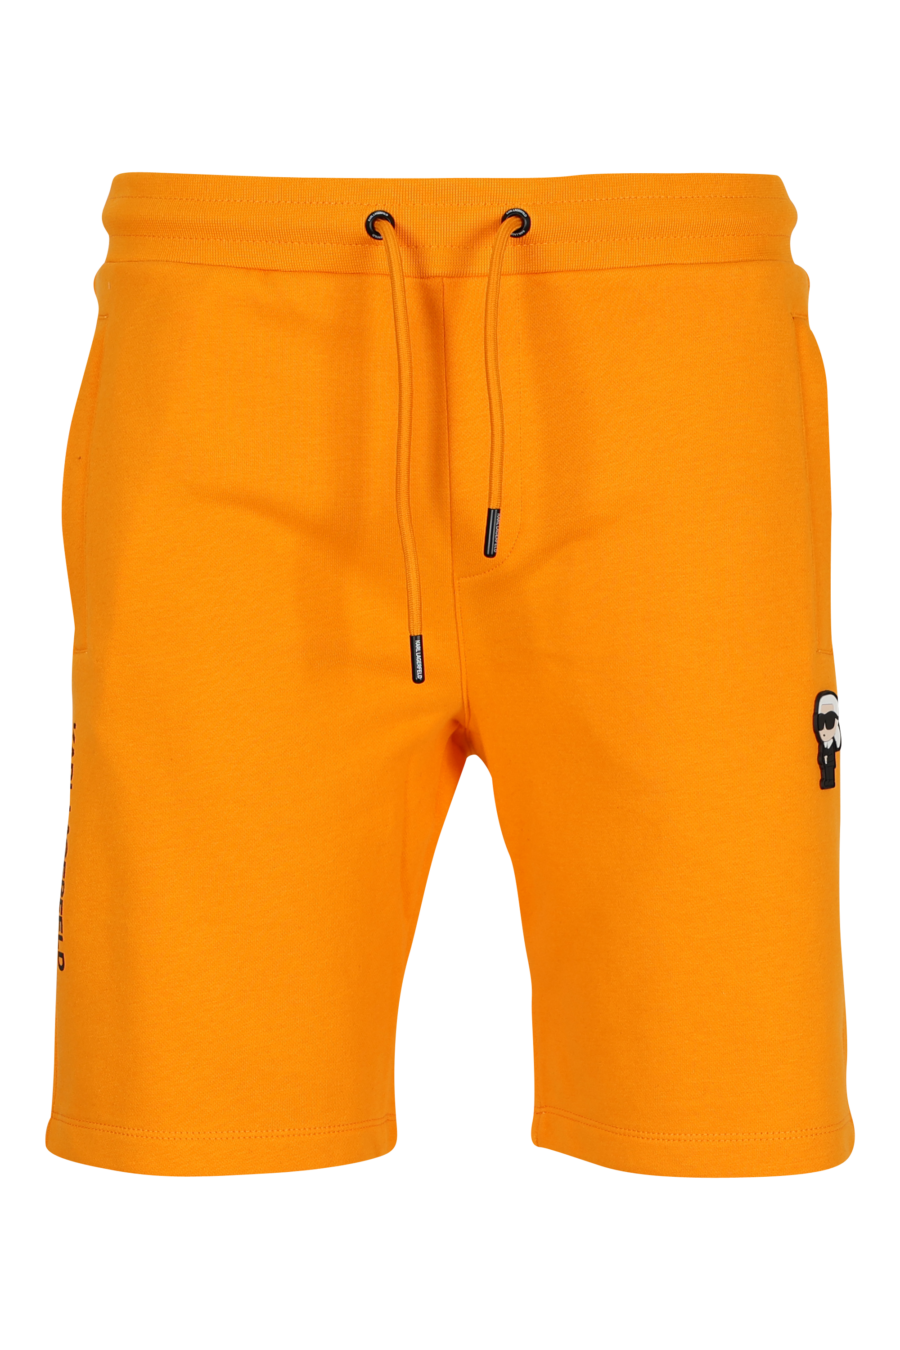 Pantalón de chándal naranja midi con minilogo "karl" en goma - 4062226932936